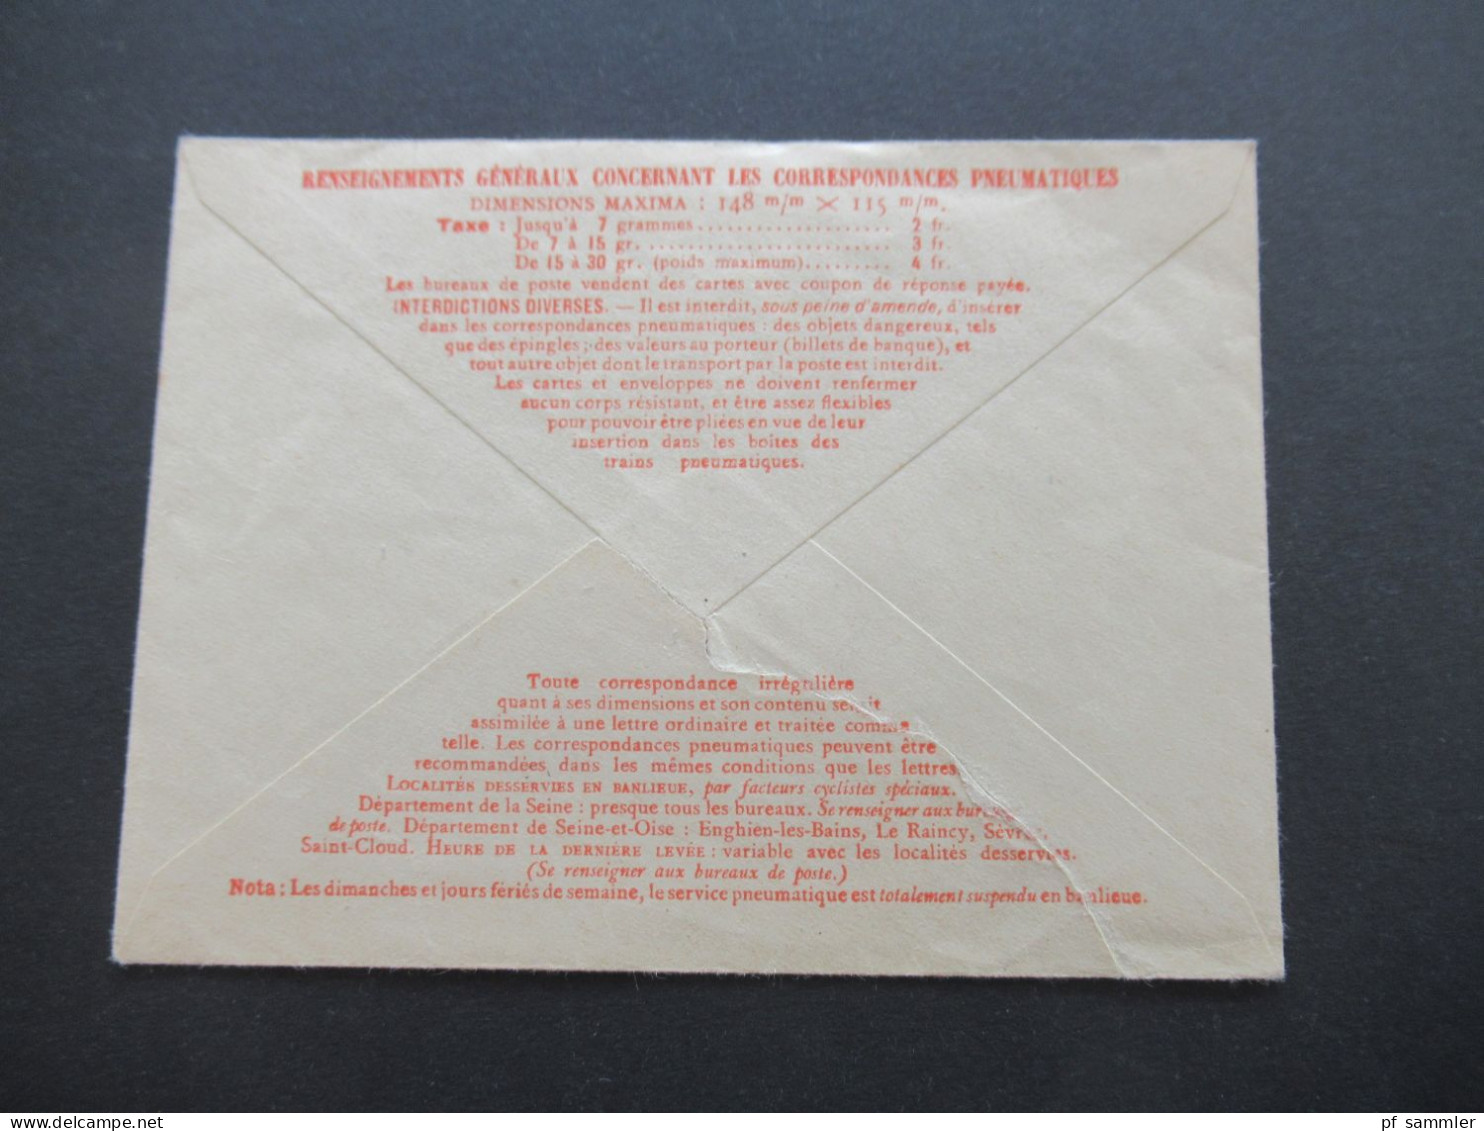 Frankreich Rohrpostumschlag RU 14 verwendet 1943 Envelope Pneumatique / mit Inhalt 4x Bon De Solidarité 1 Franc Notgeld